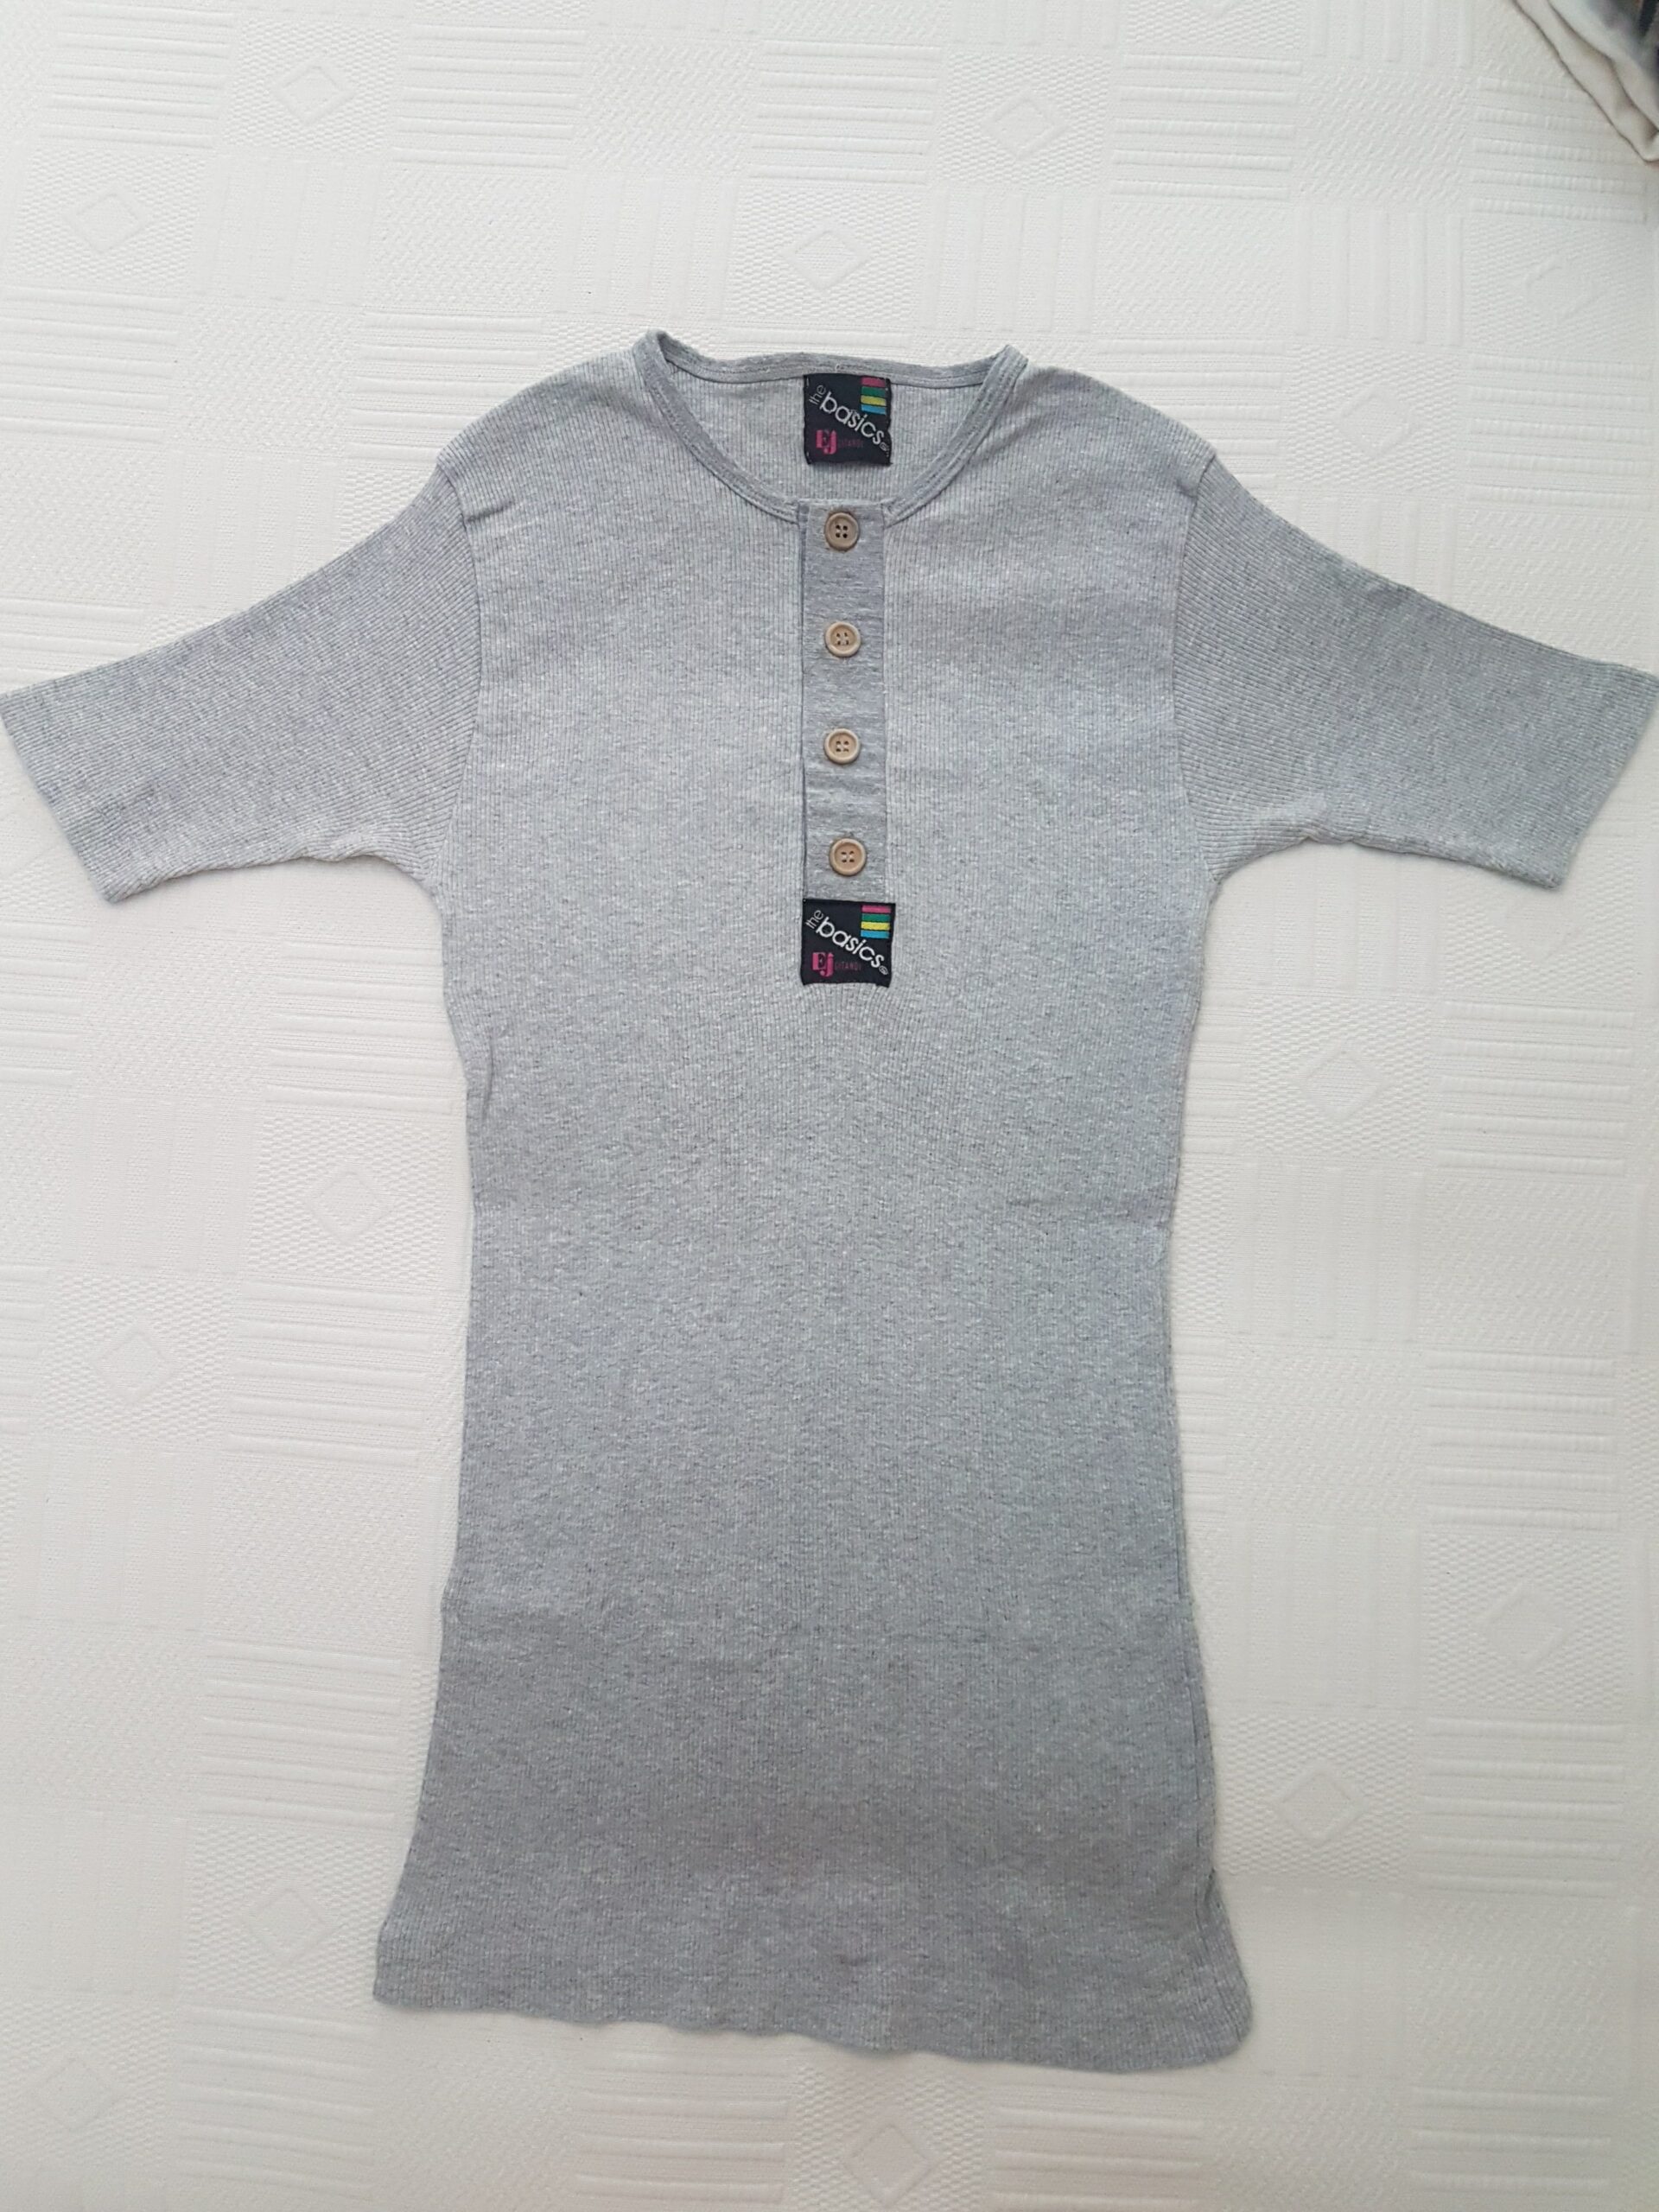 T-shirt Cinza, tamanho M 3